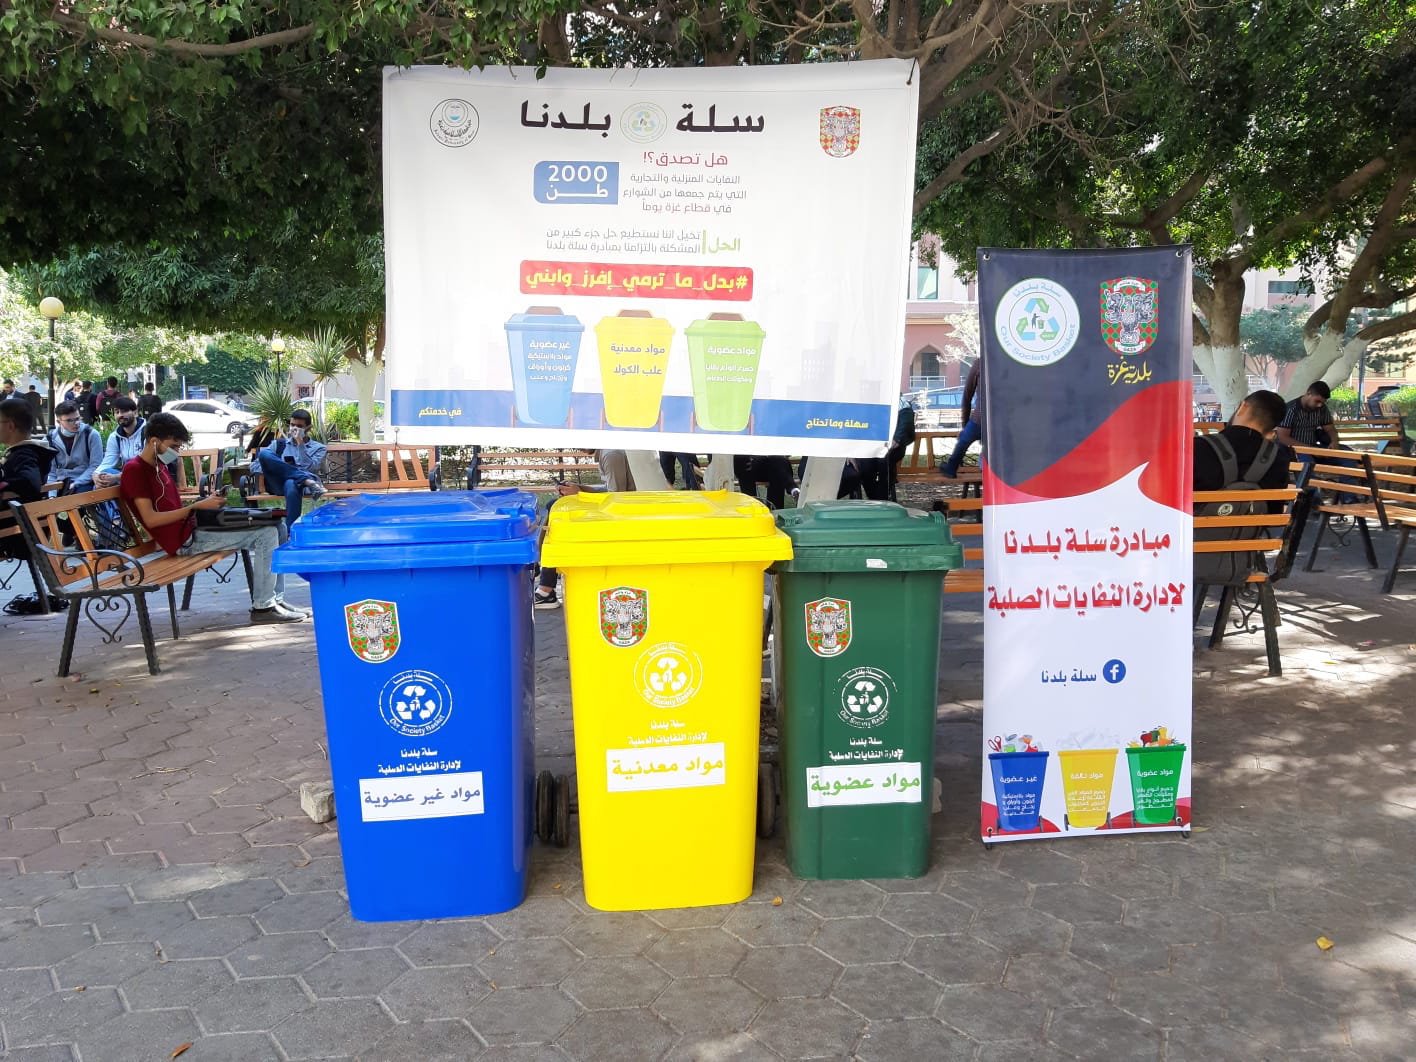 You are currently viewing “سلة بلدنا”.. مبادرة شبابية لإعادة تدوير النفايات والحفاظ على البيئة